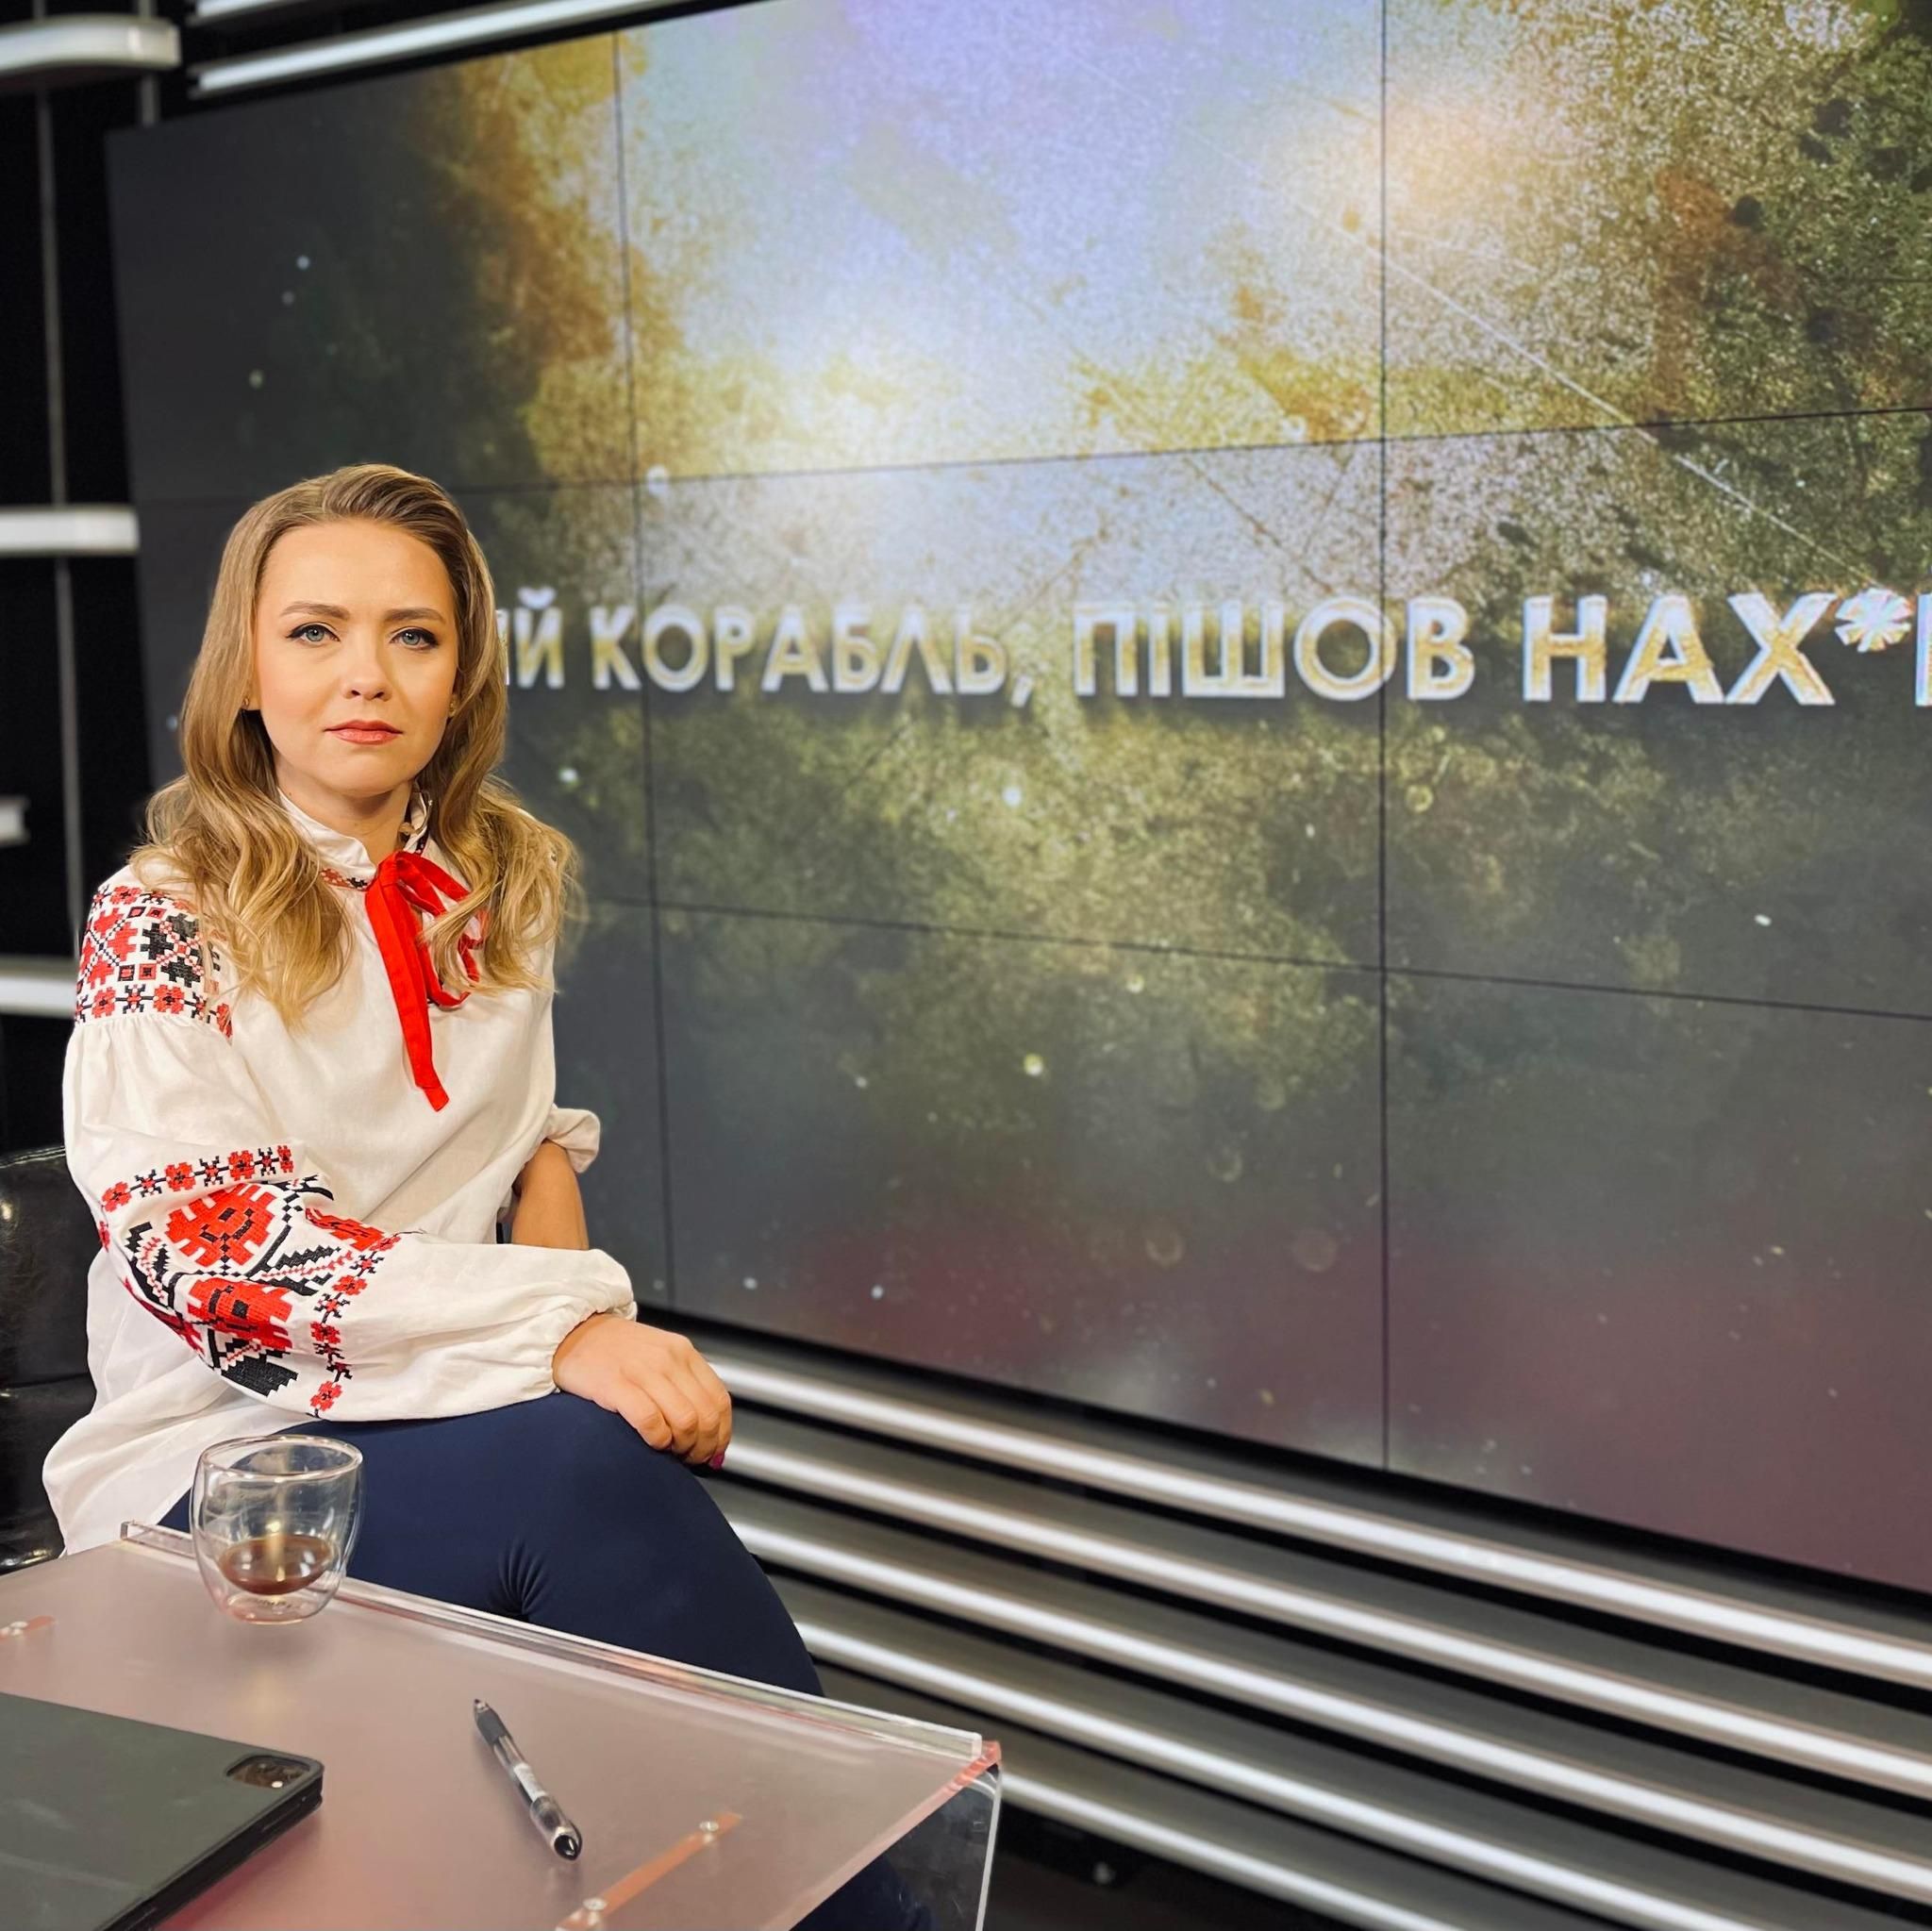 "Можете пересидеть, пока не сменится режим": Соляр призвала россиян сдаваться в плен